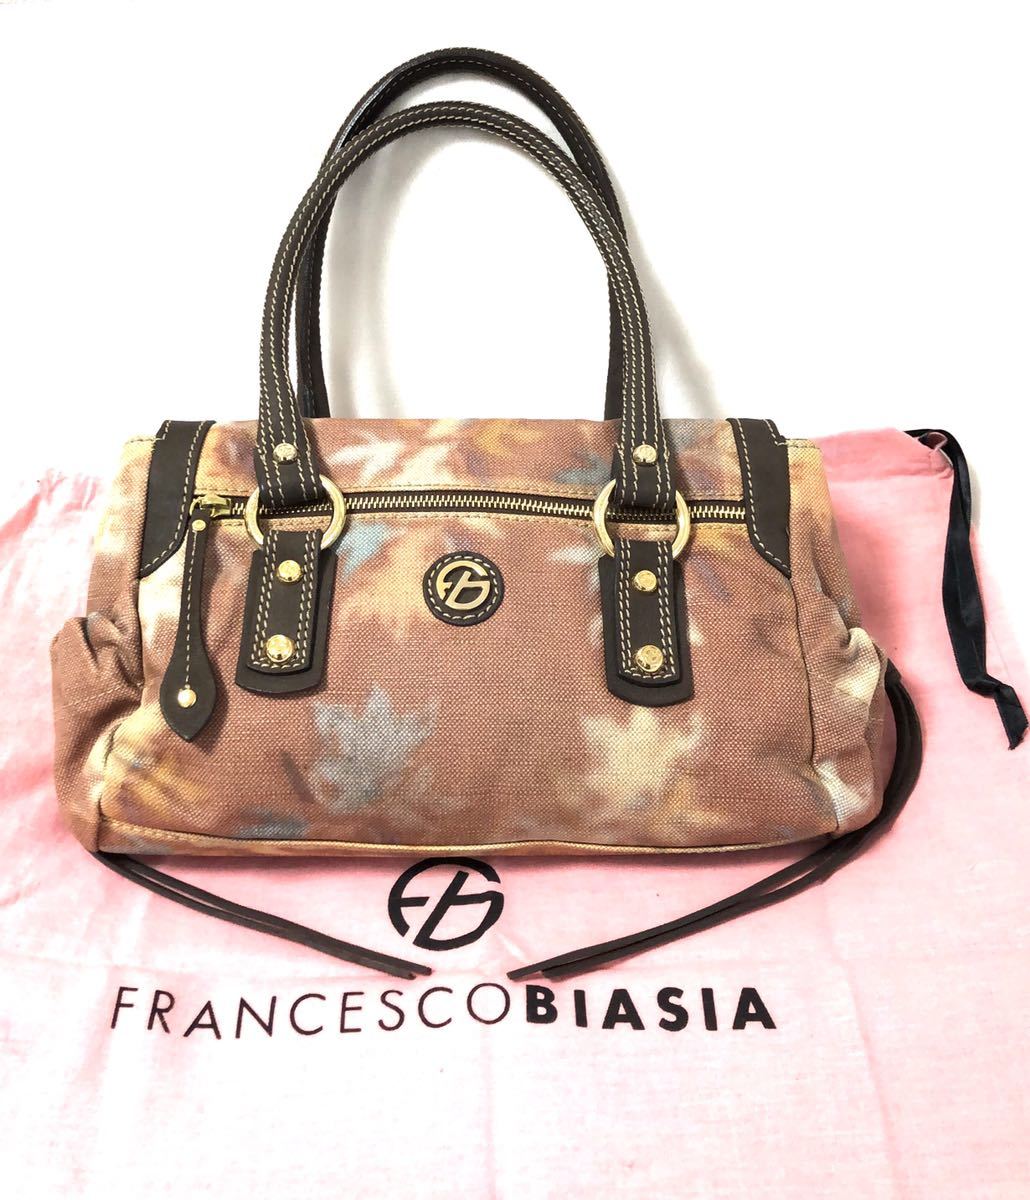 限定版 FRANCESCO BIASIA フランチェスコ ビアジア ハンドバッグ 美品